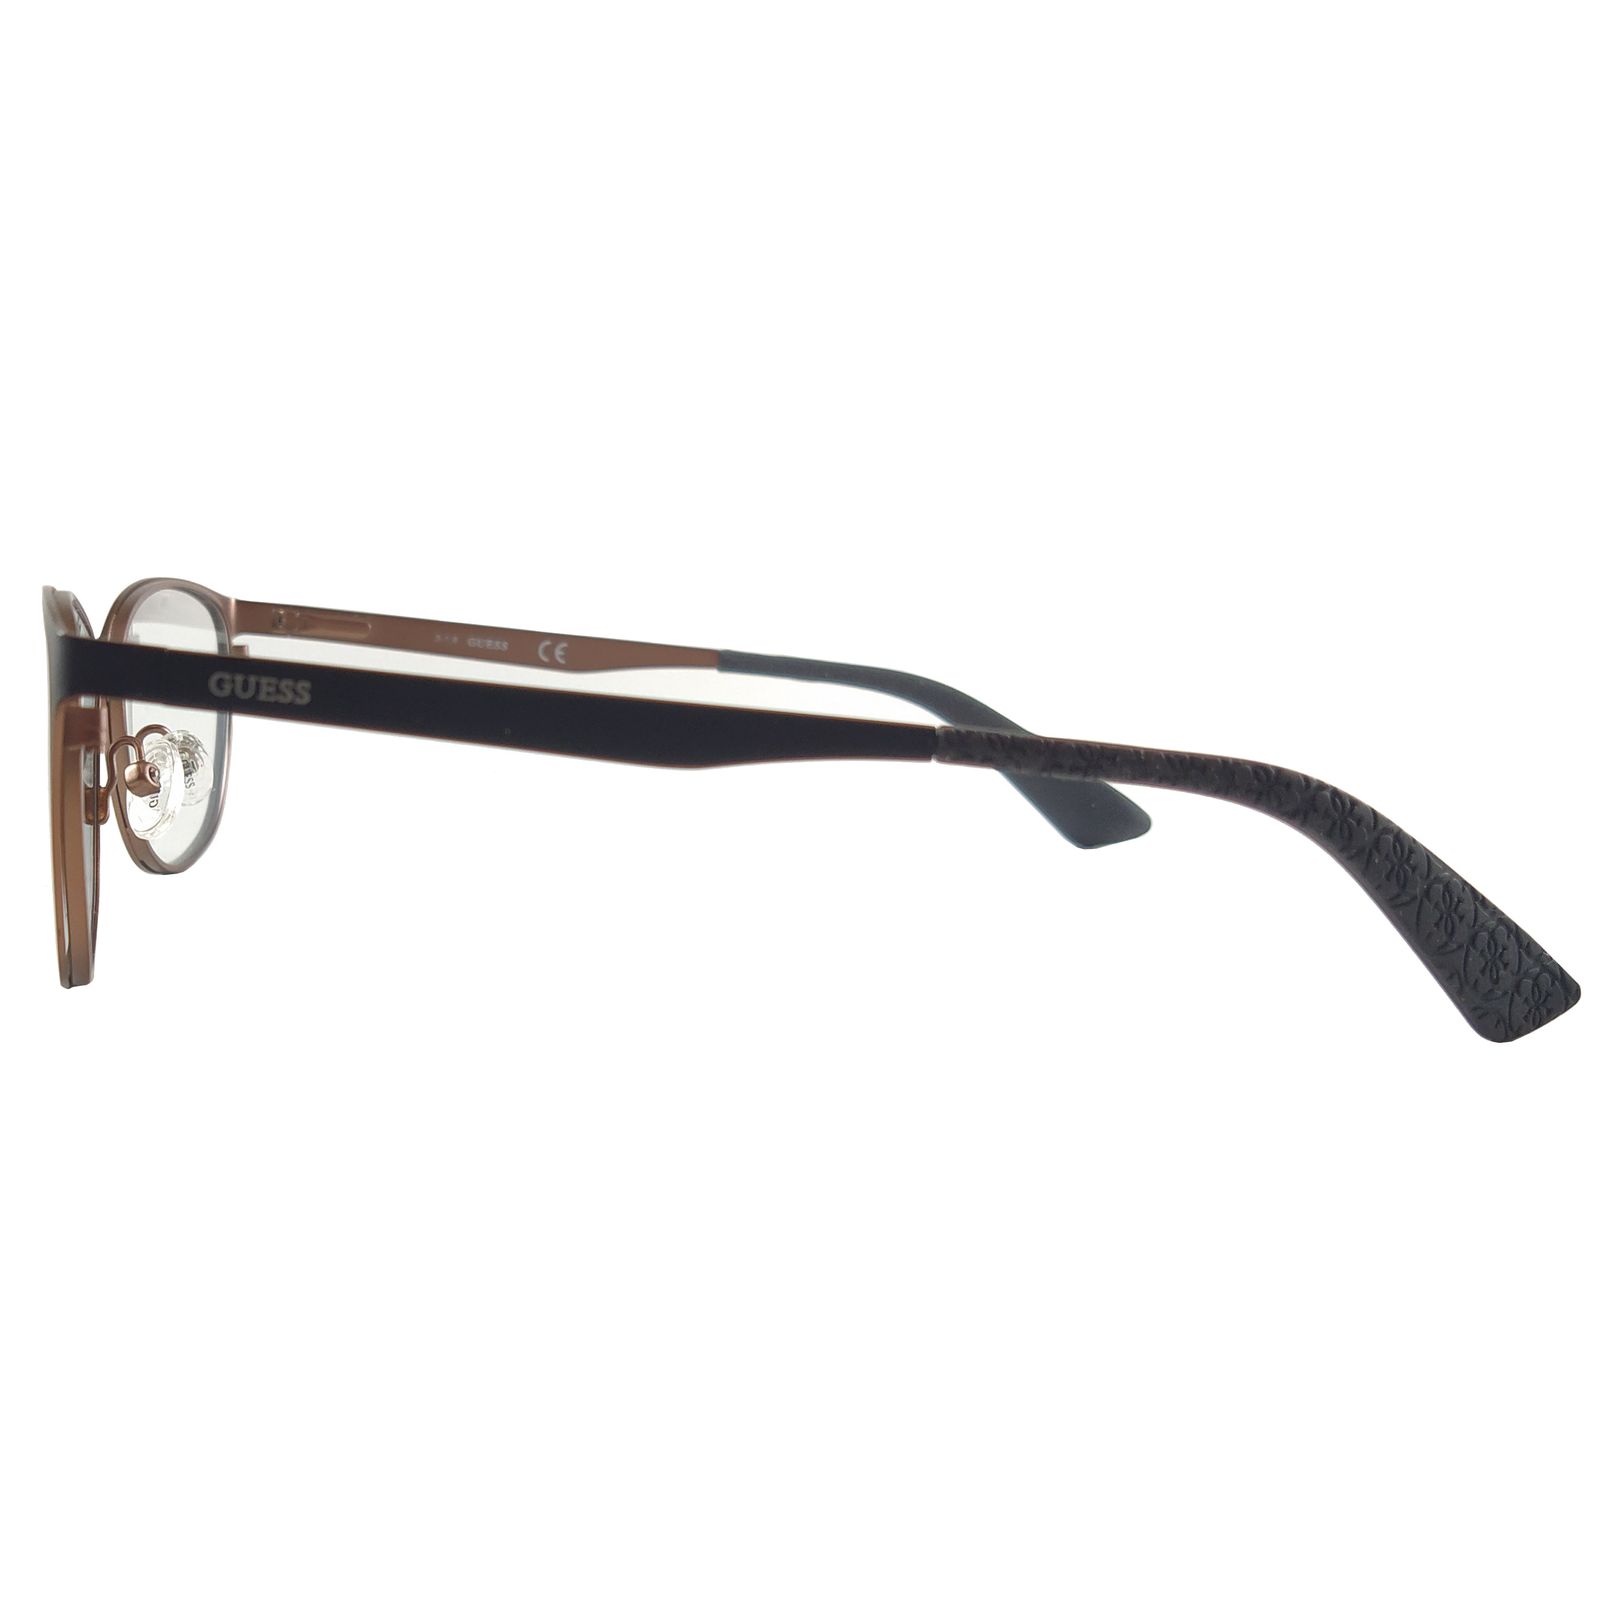 فریم عینک طبی زنانه گس مدل GU256400251 -  - 5